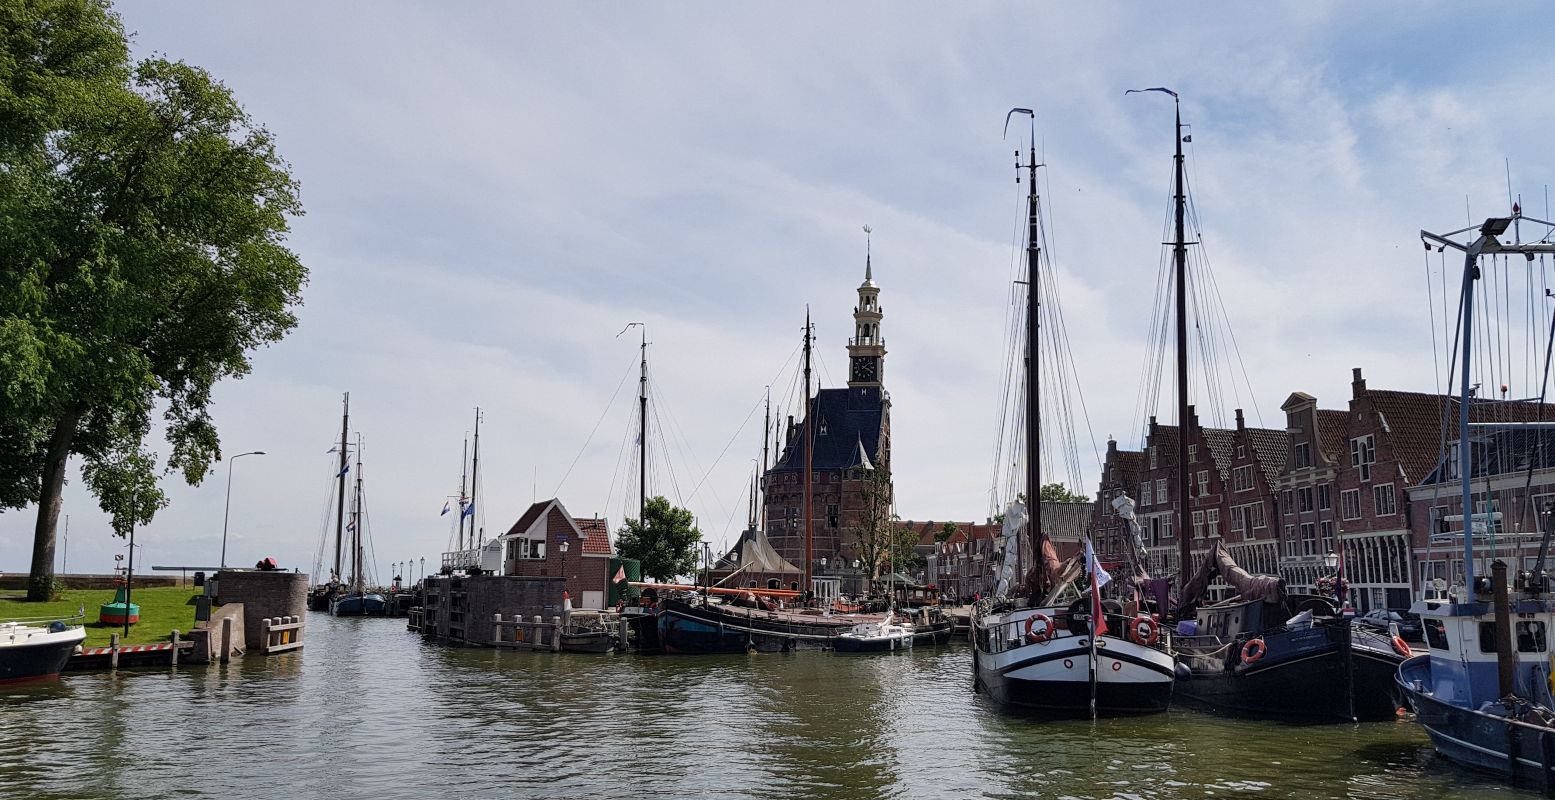 Hotspot van Hoorn: de haven vol historische schepen, met op de achtergrond de Hoofdtoren. Foto: DagjeWeg.NL © Tonny van Oosten